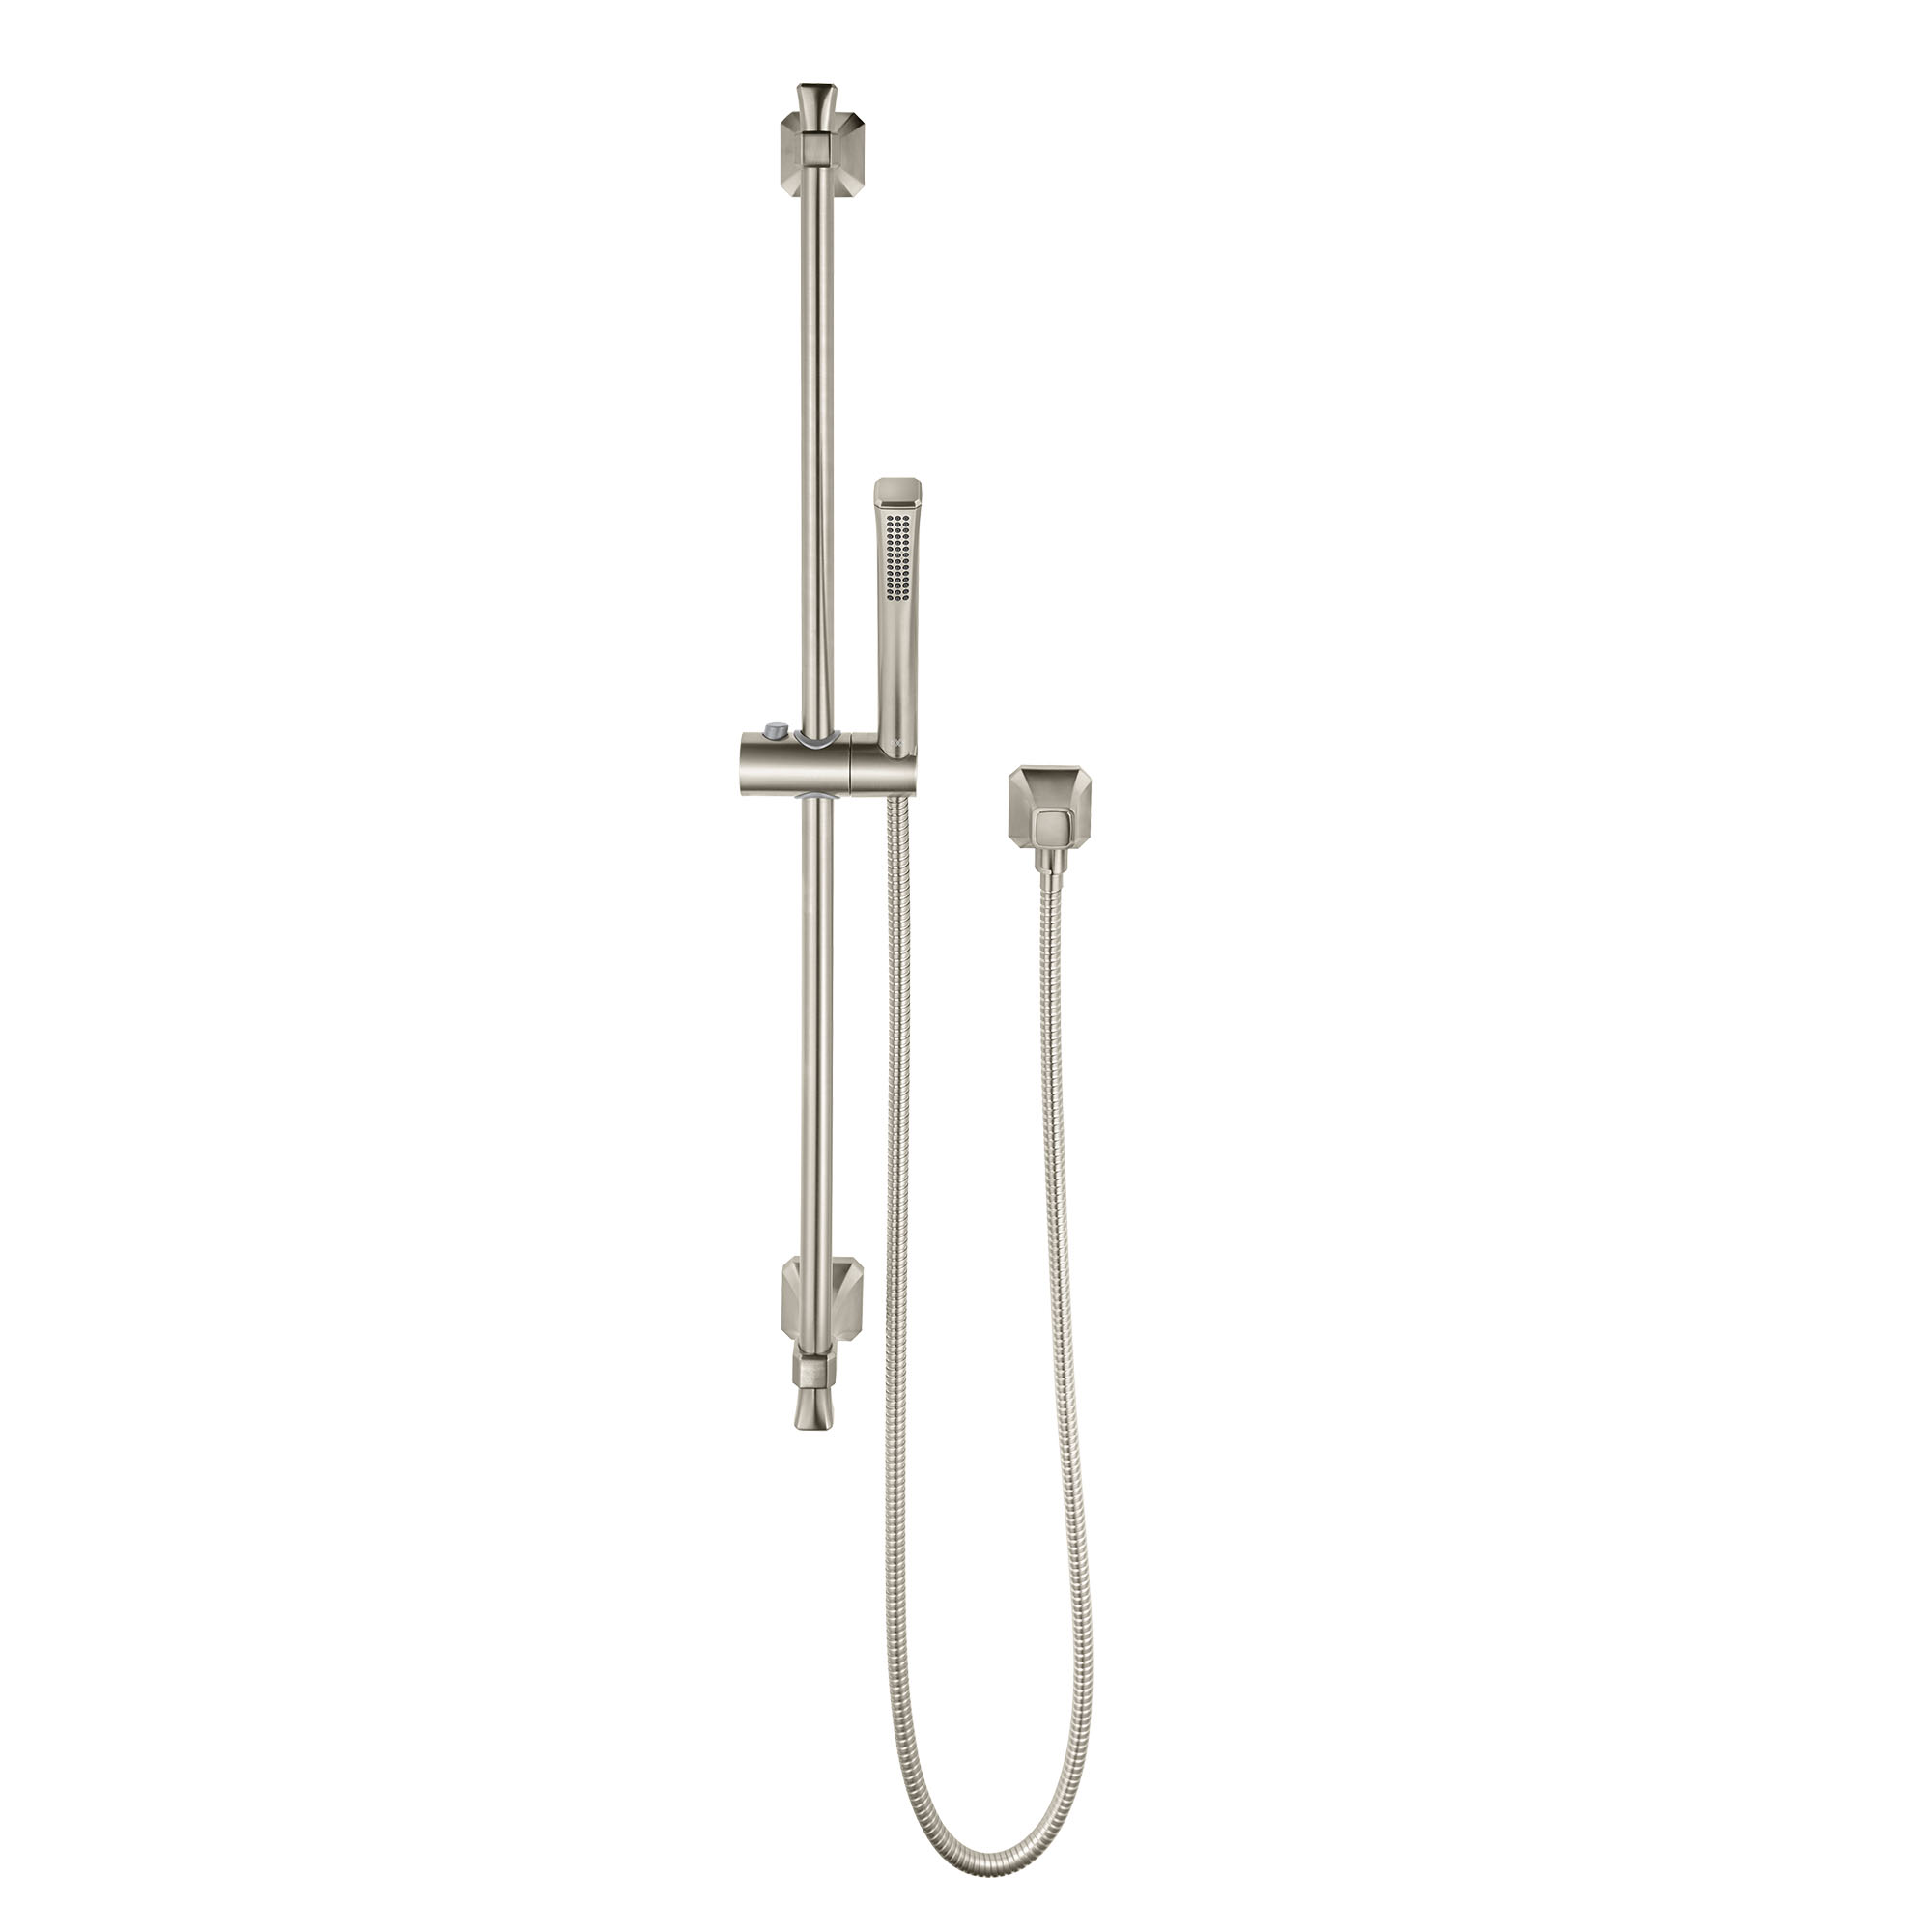 Belshire® Personal Hand Shower Set with Adjustable 30 in. Slide Bar